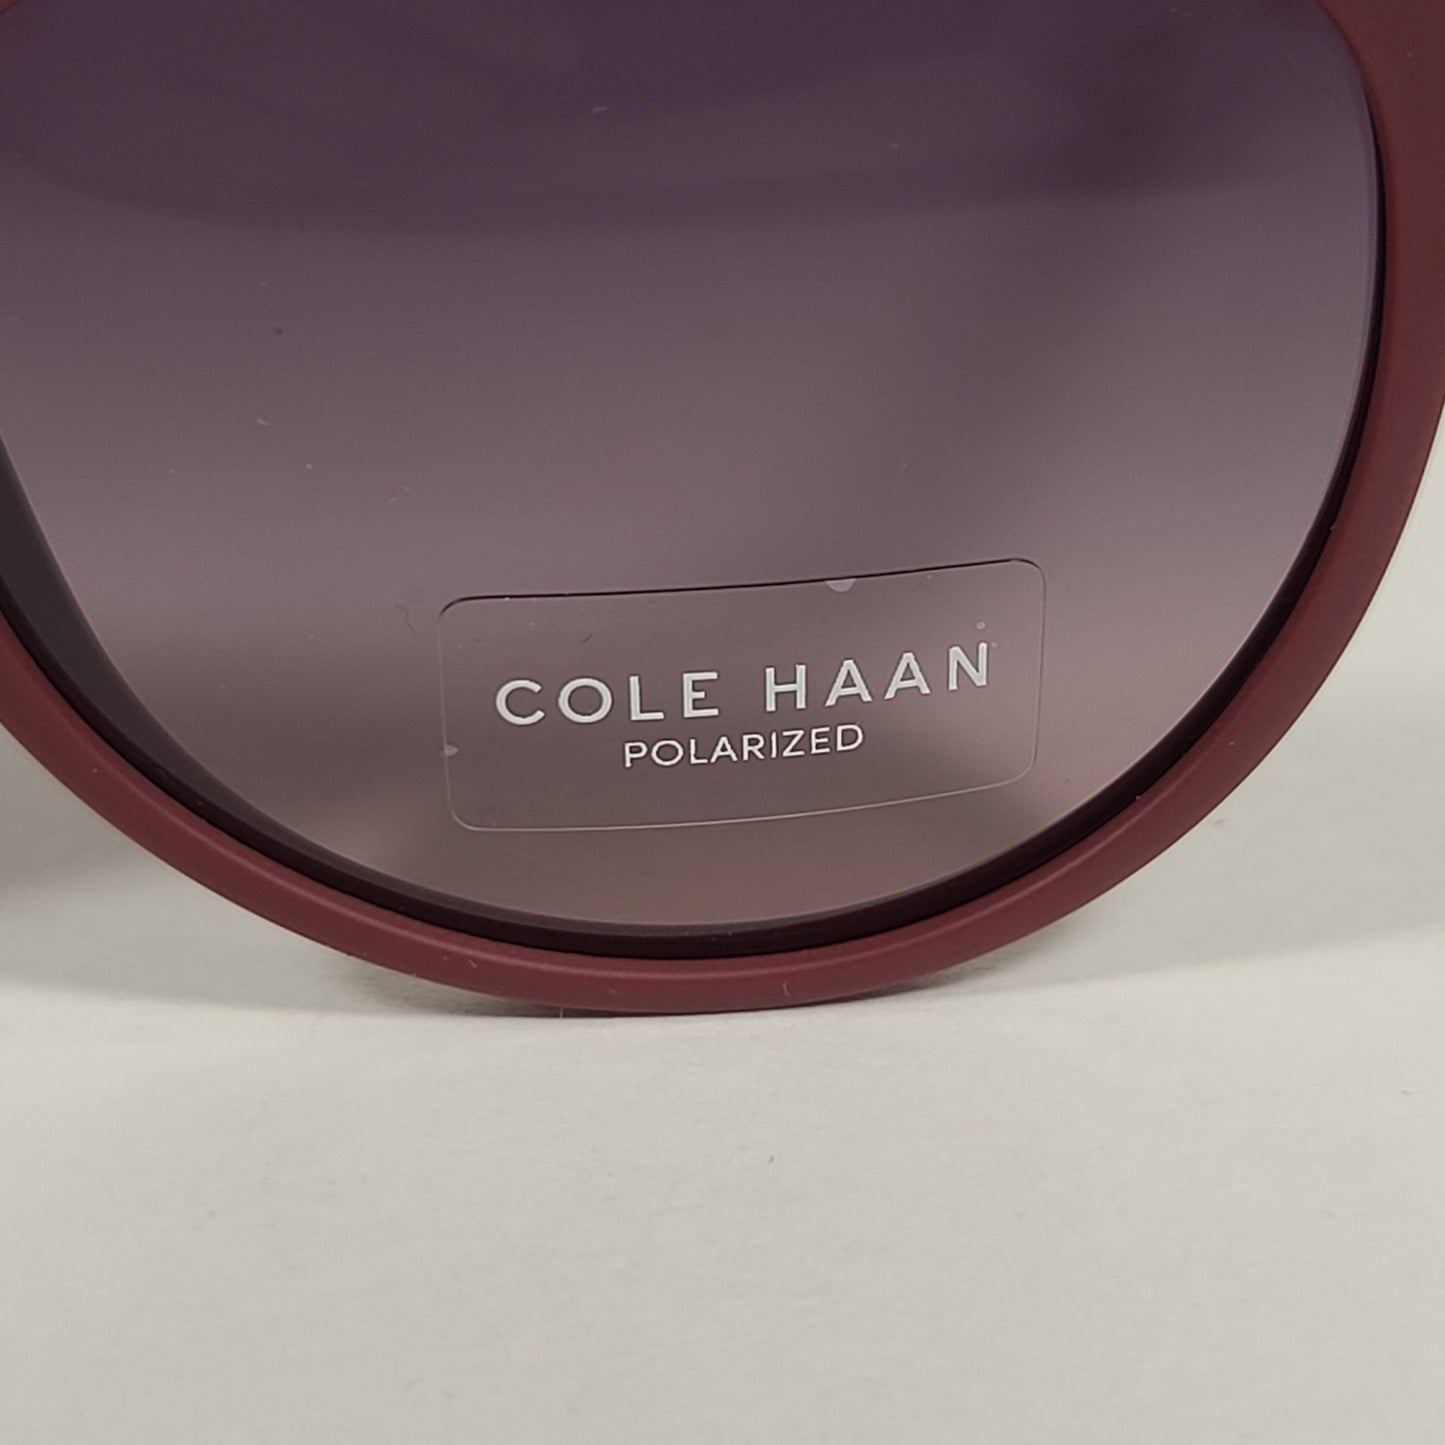 Cole Haan CH8502 610 Polarized Key Hole Sunglasses Matte Burgundy Gradient Lens - Sunglasses